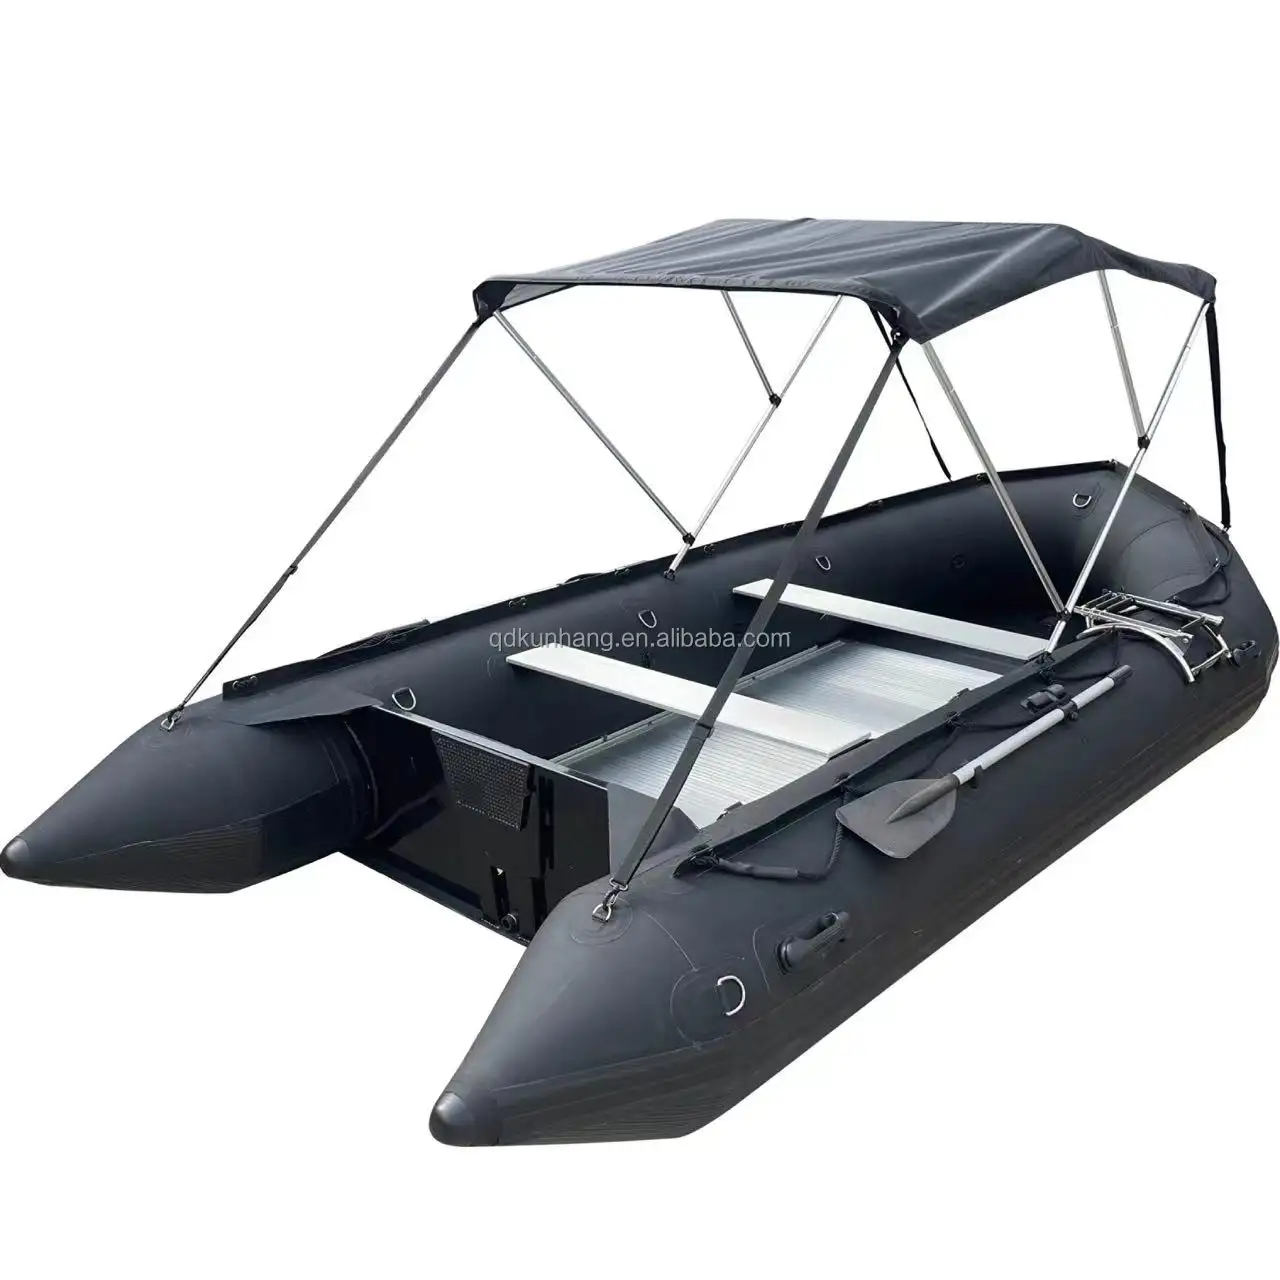 14 ft alumínio travessa dobrável barco a remo com bimini piso alumínio superior PVC barco inflável para venda